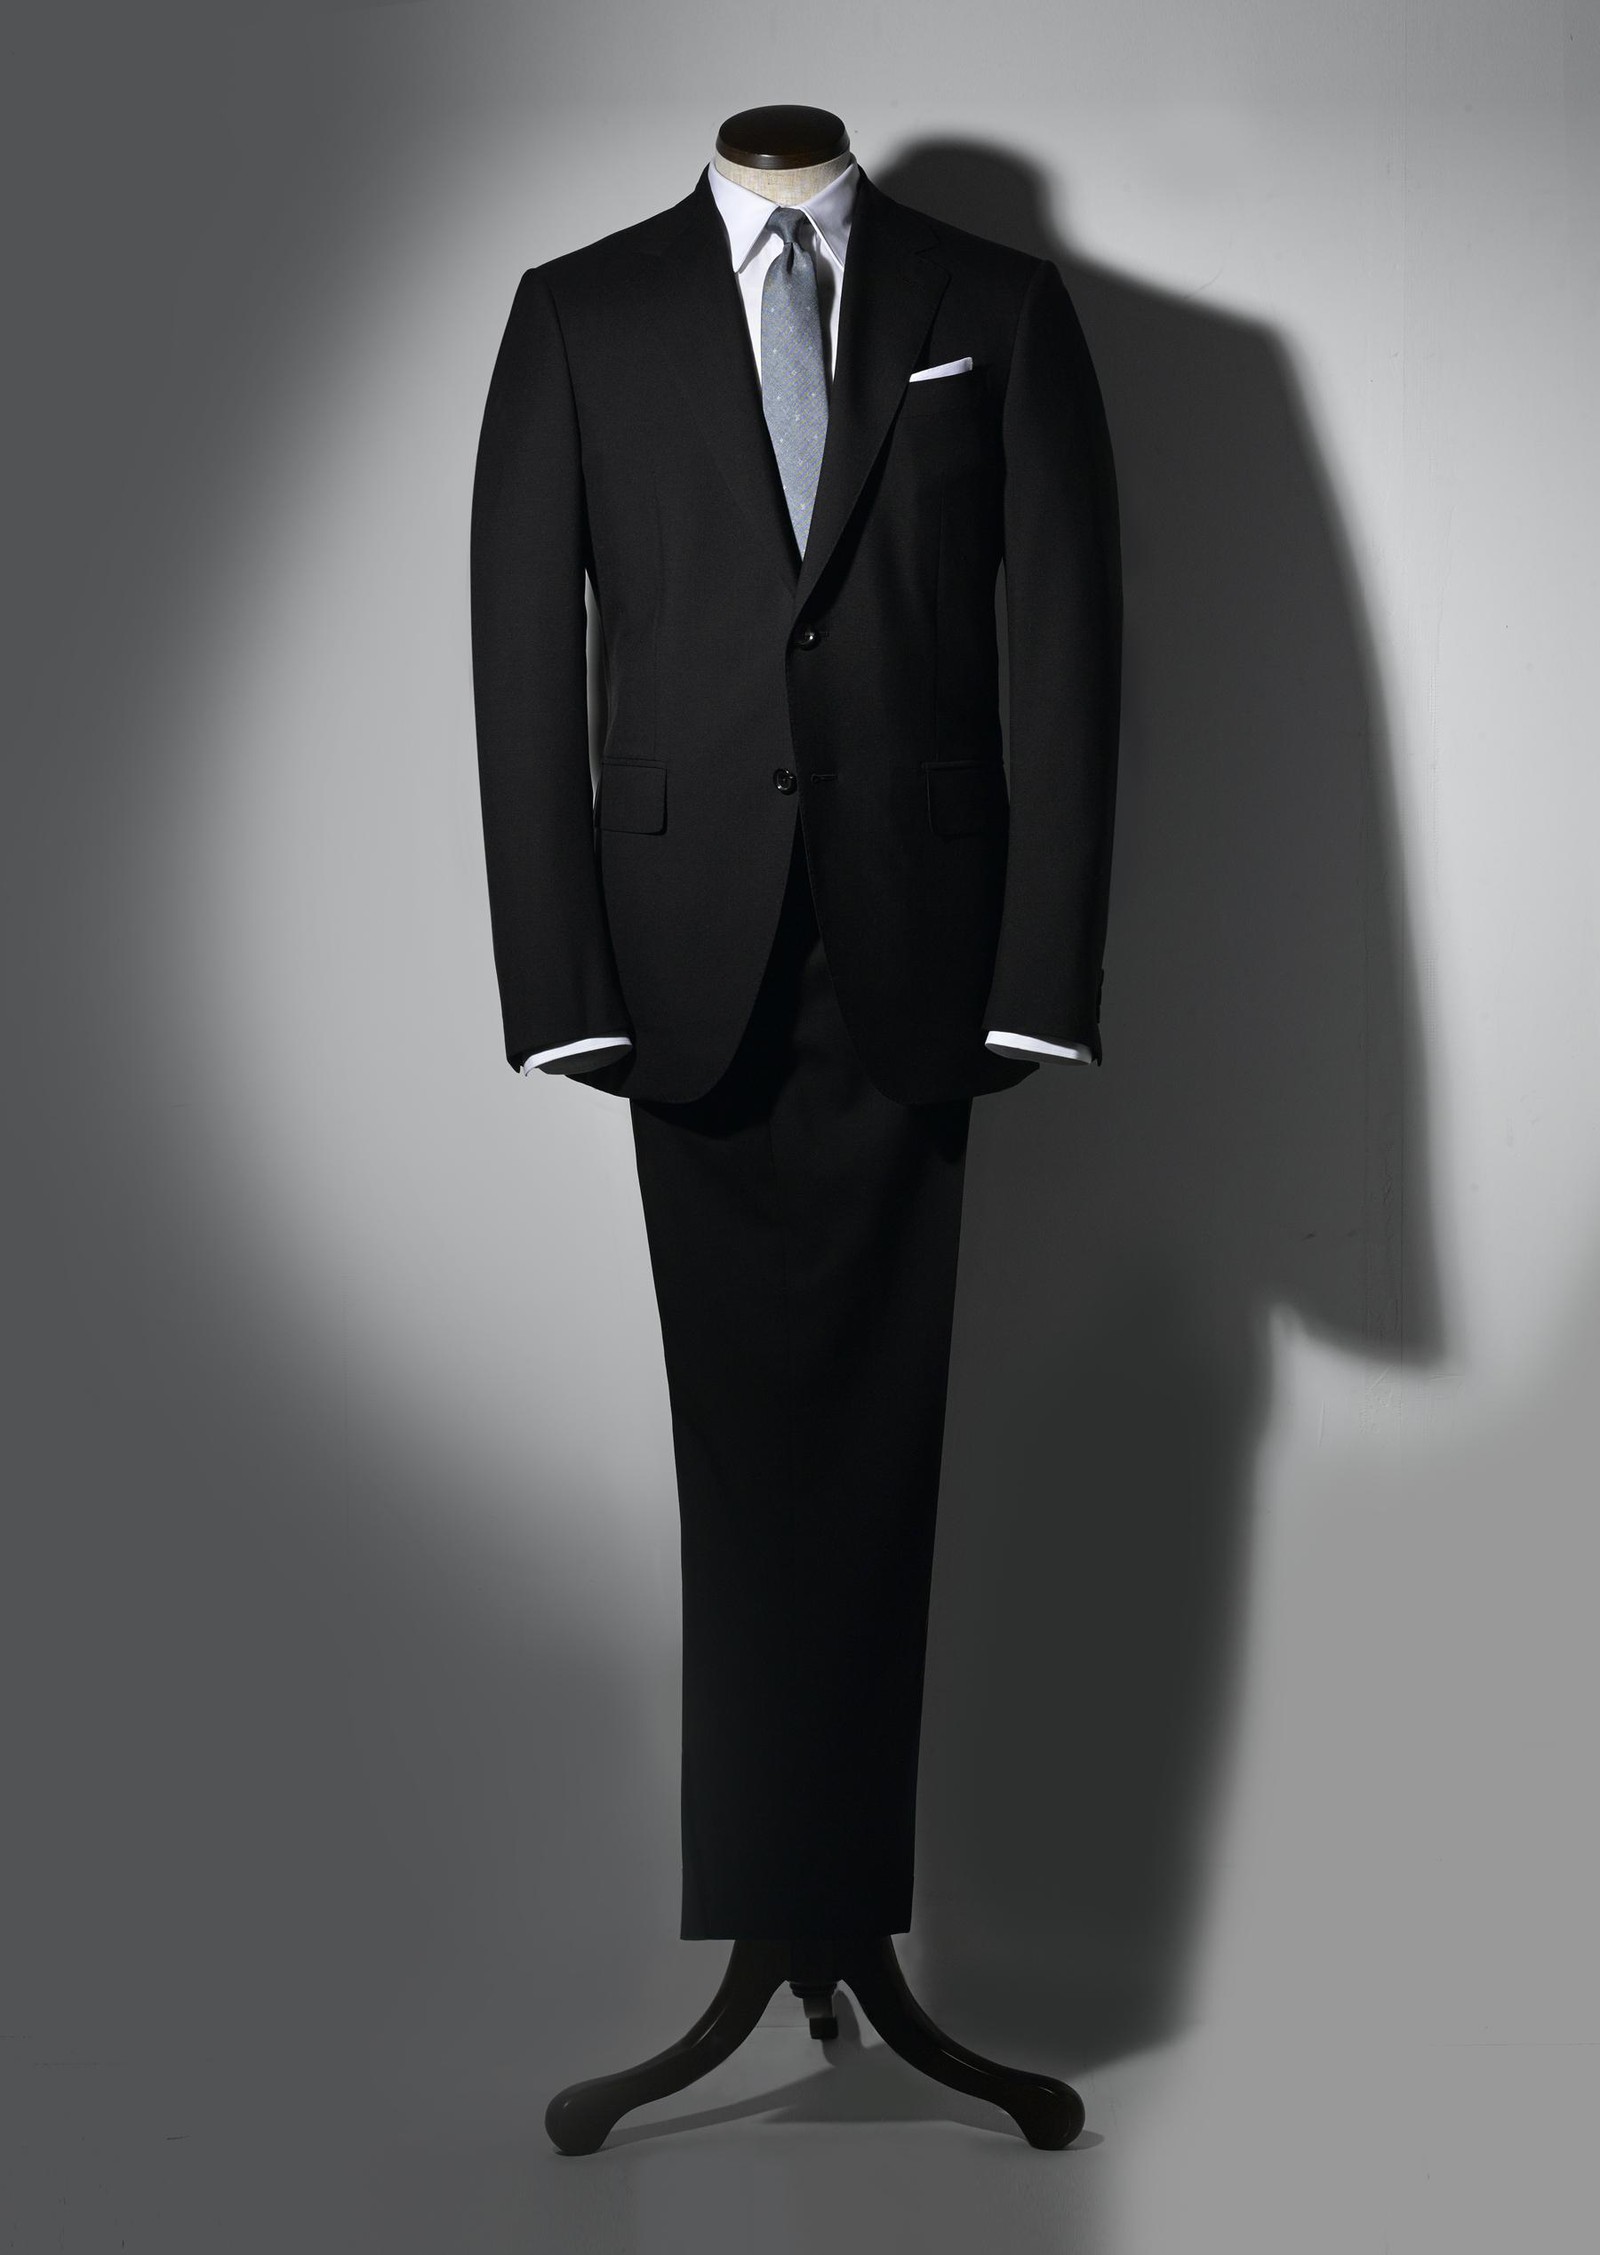 ルイ・ヴィトンの極上スーツは、オン・オフの自在っぷりも最高峰